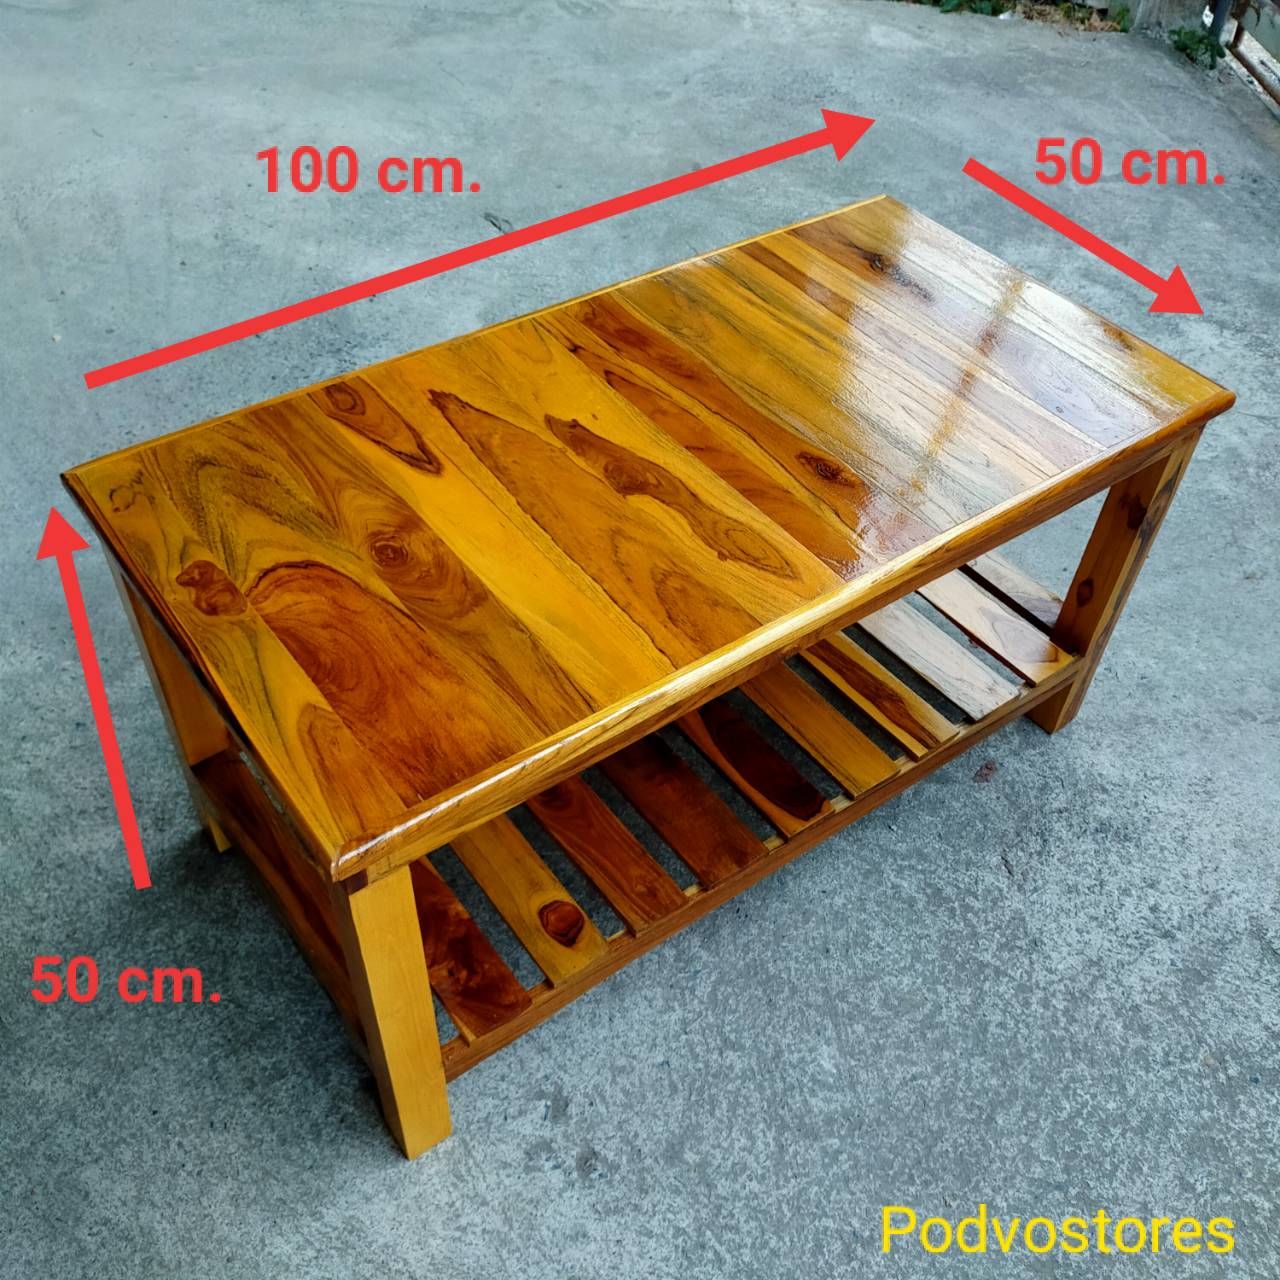 โต๊ะไม้สัก 2 ชั้น โต๊ะญี่ปุ่น (ทำสีลงแลกเกอร์เครือบเงา) (กว้าง 50 cm. ยาว 100 cm. สูง 50 cm.)ทำจากไม้สัก โต๊ะวางของ โต๊ะ